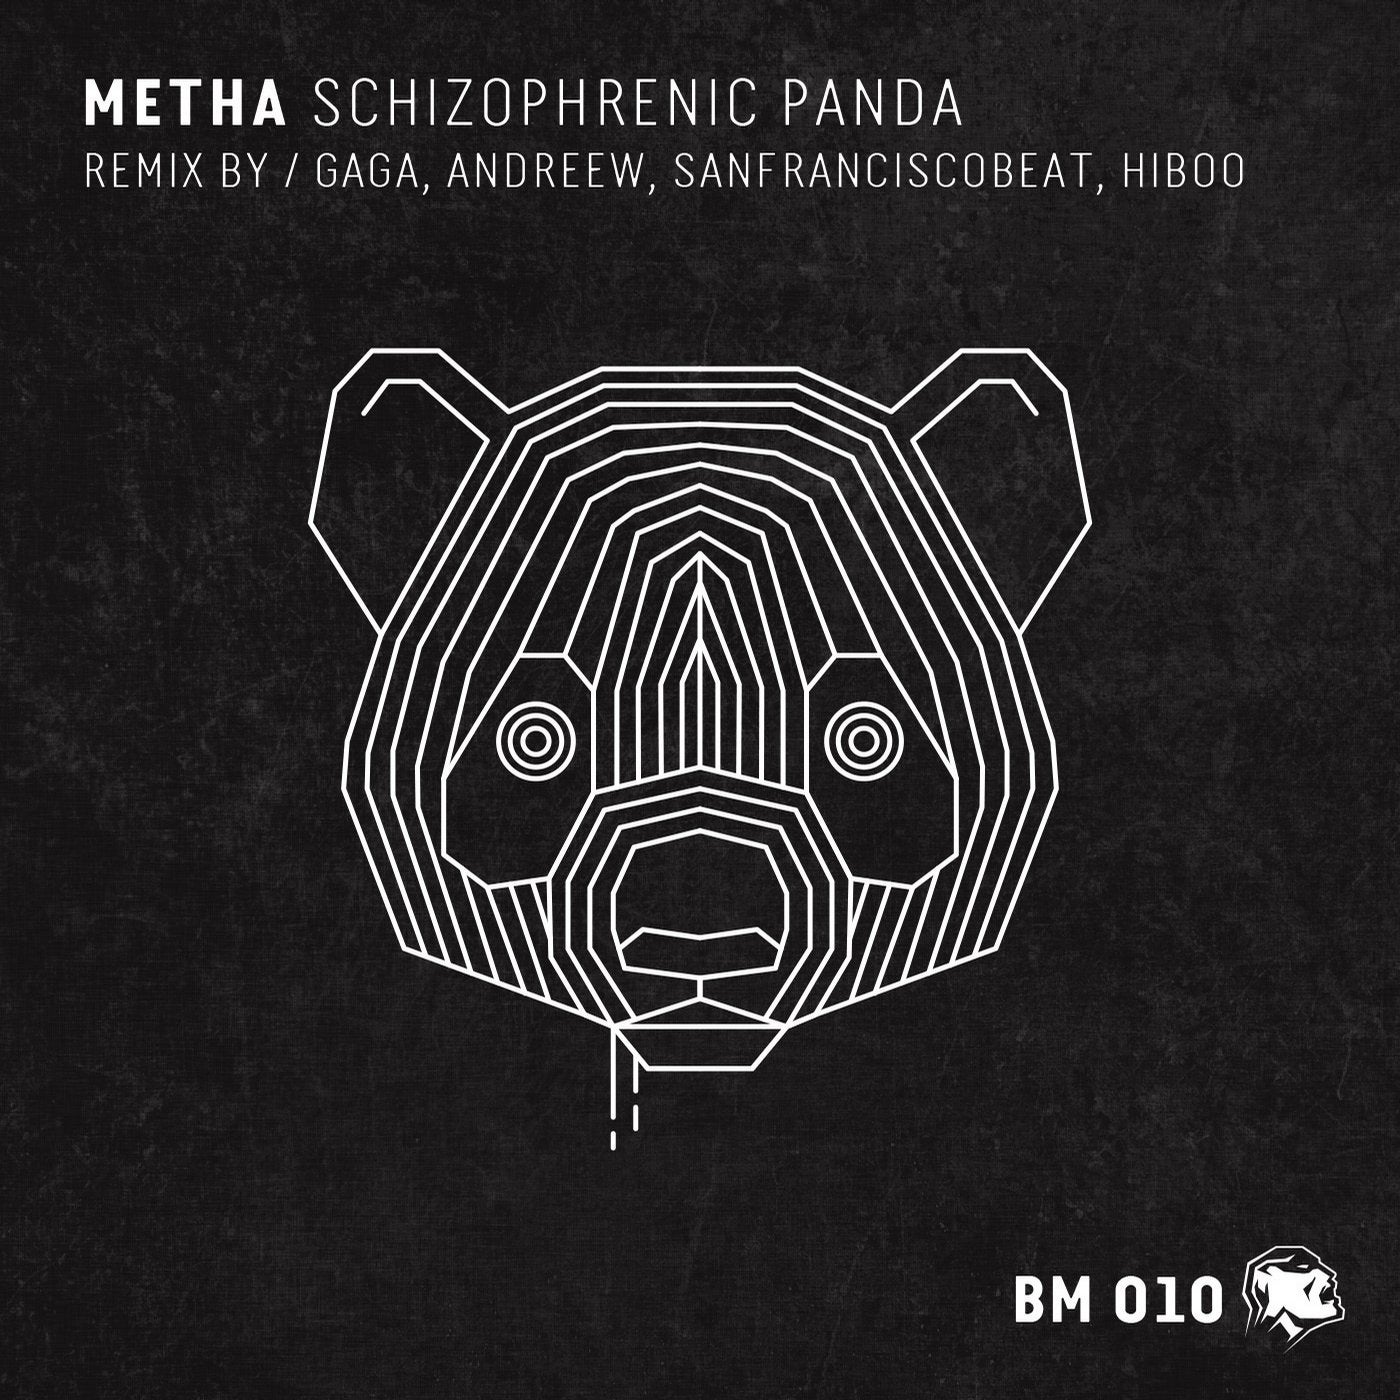 Schizophrenic Panda